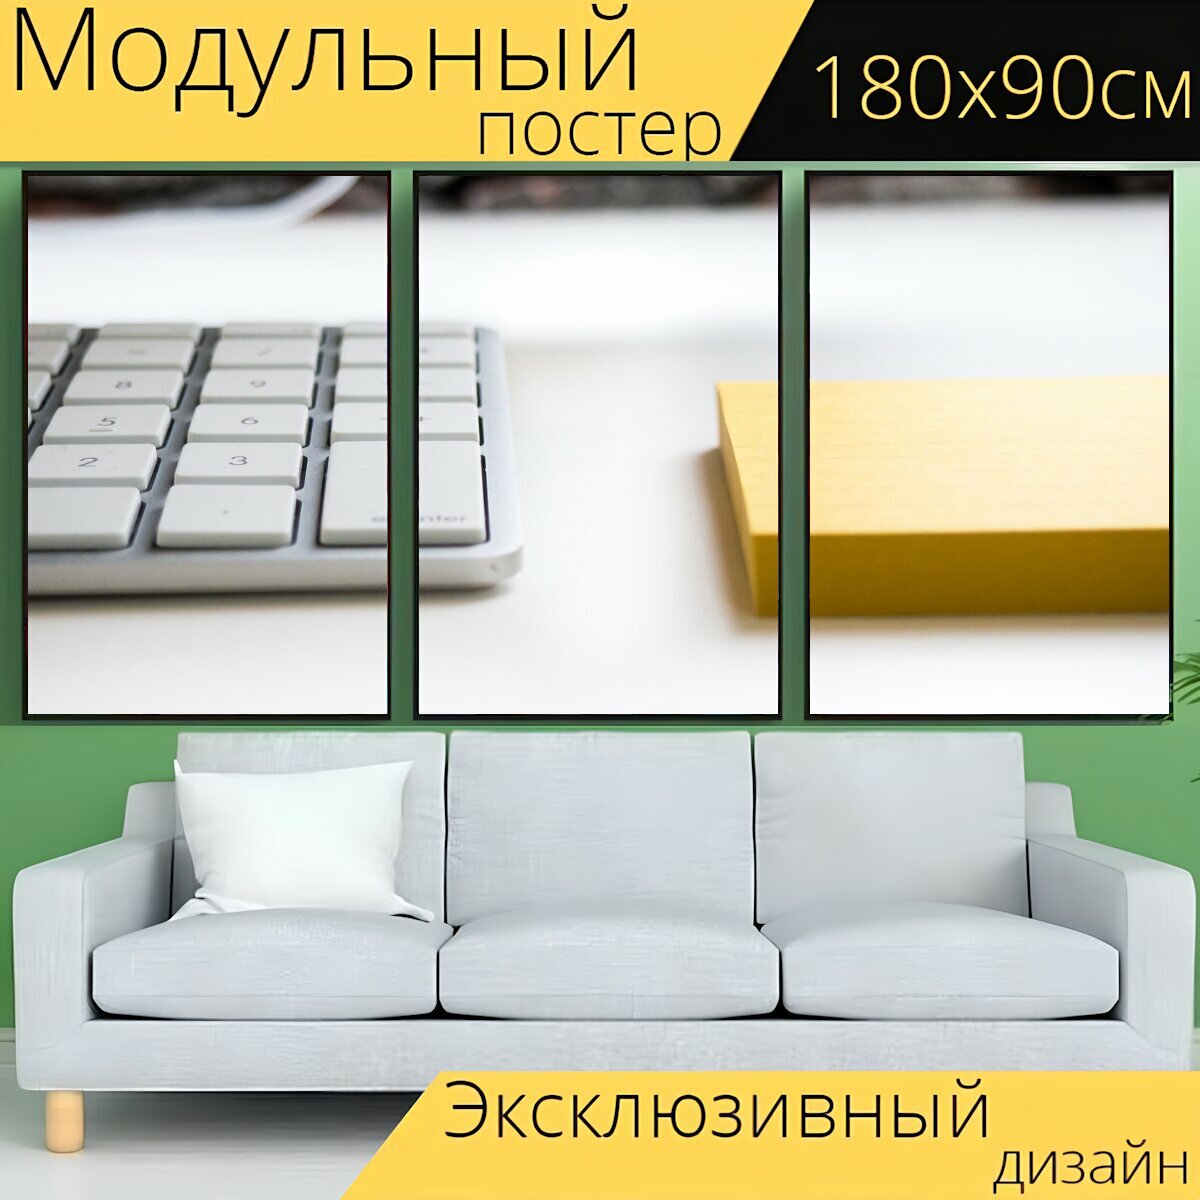 Модульный постер "Клавиатура, офис, стол письменный" 180 x 90 см. для интерьера